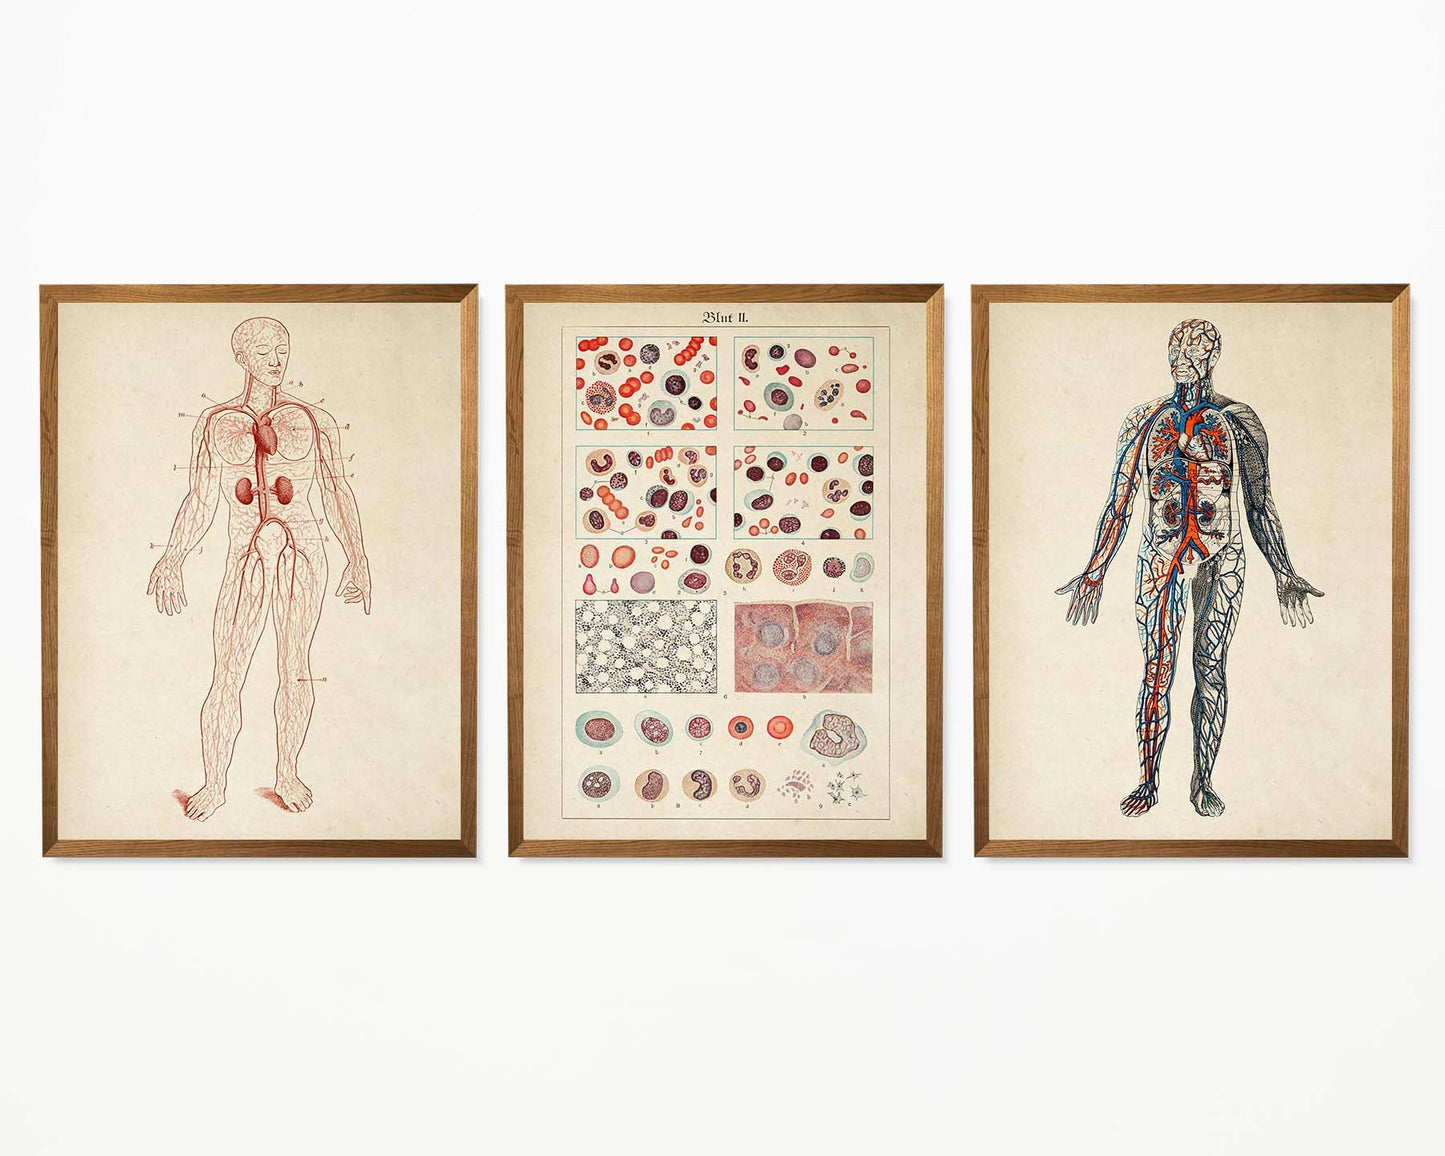 Vintage Anatomy Posters "BLOOD" Set of 3 Prints